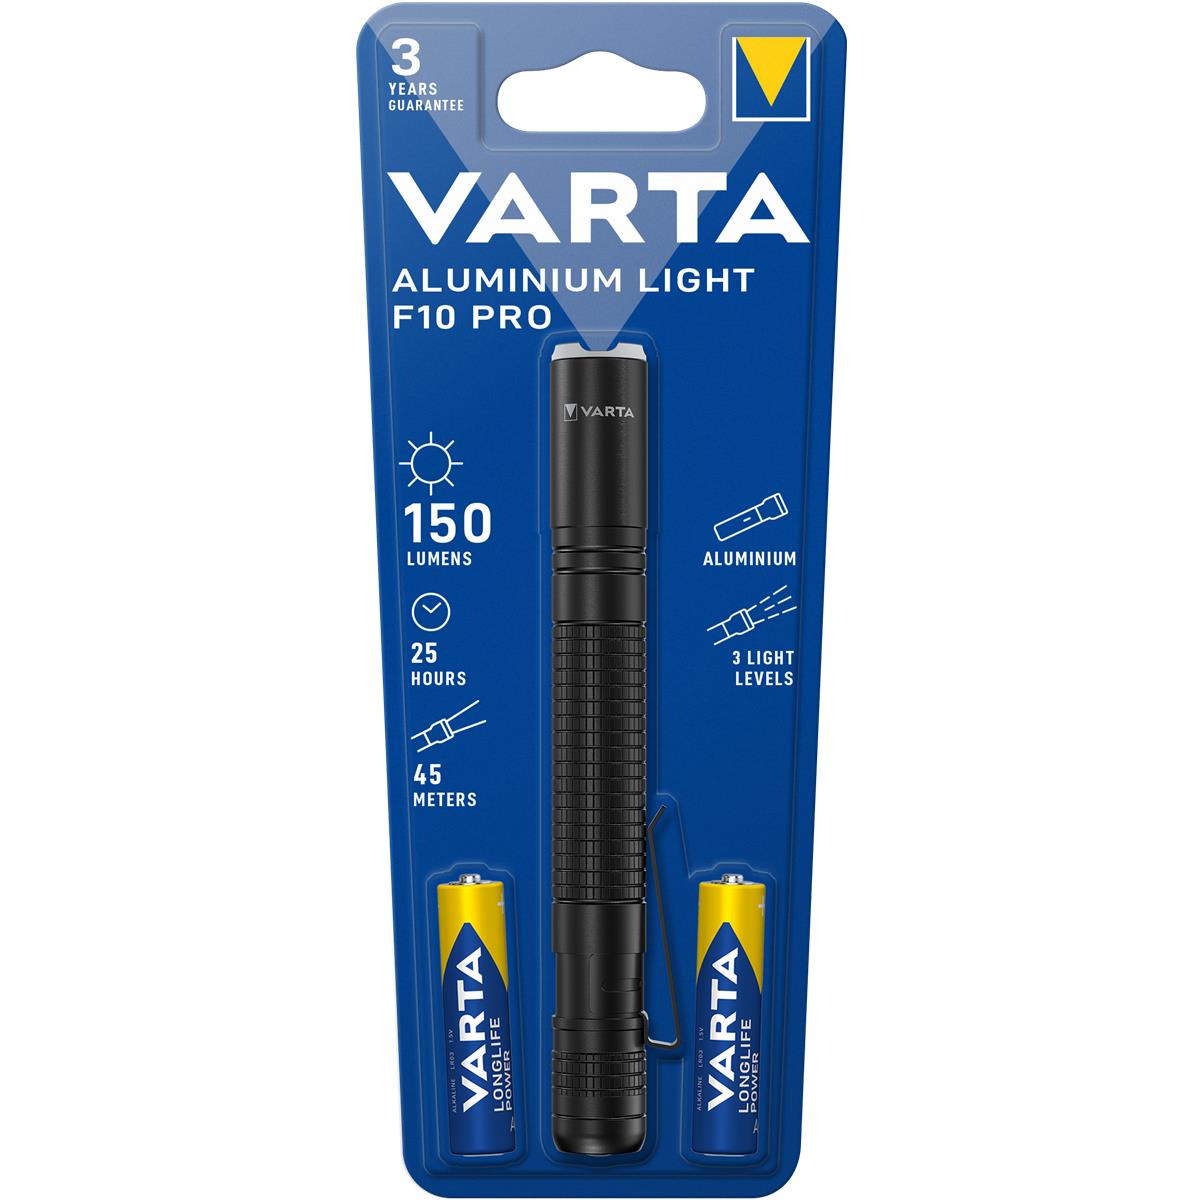 VARTA Aluminium Light F10 Pro 2AAA mit Batt.